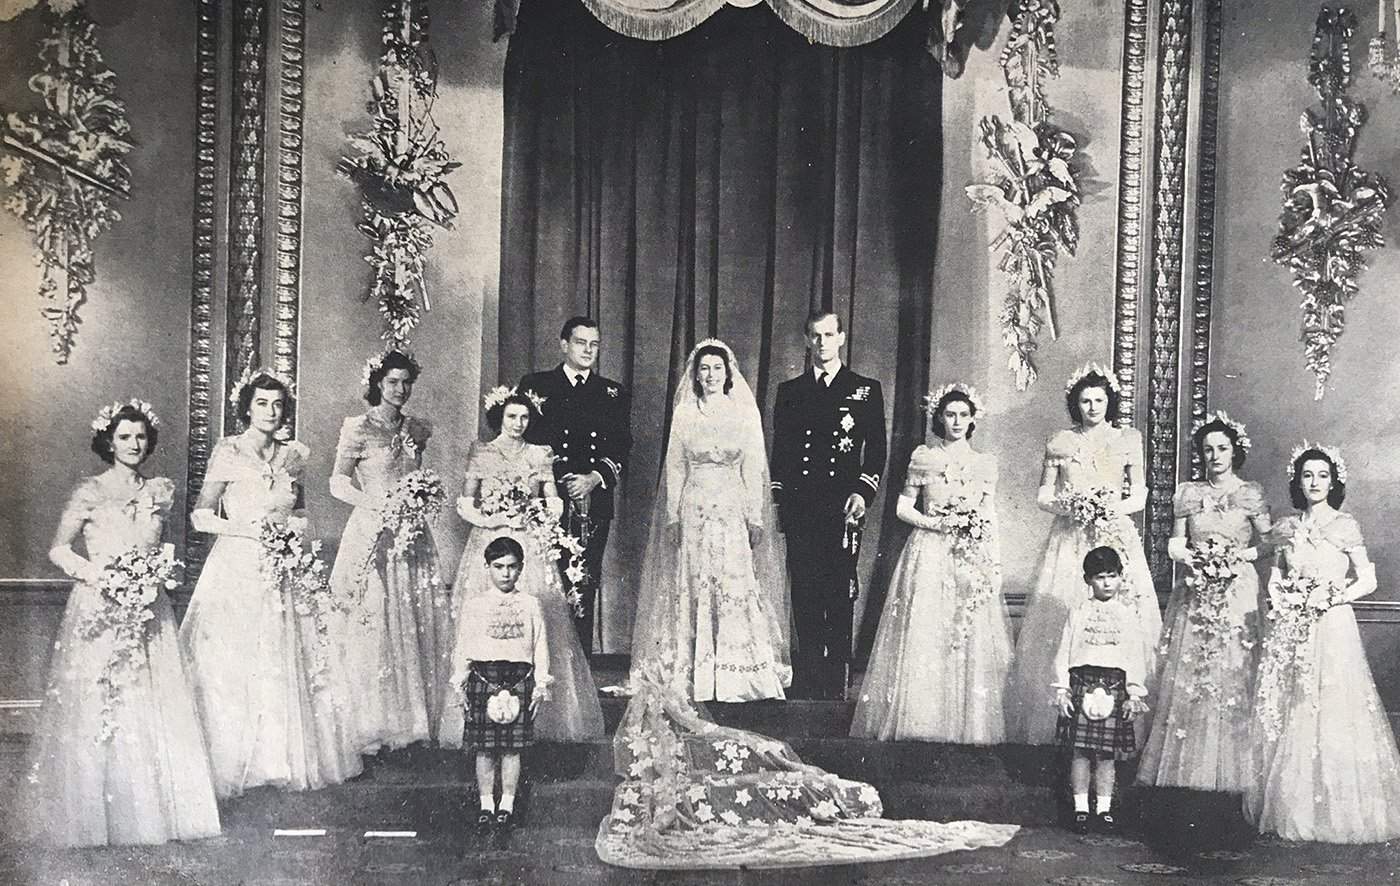 Une image du mariage de la reine Elizabeth II. | Getty Images